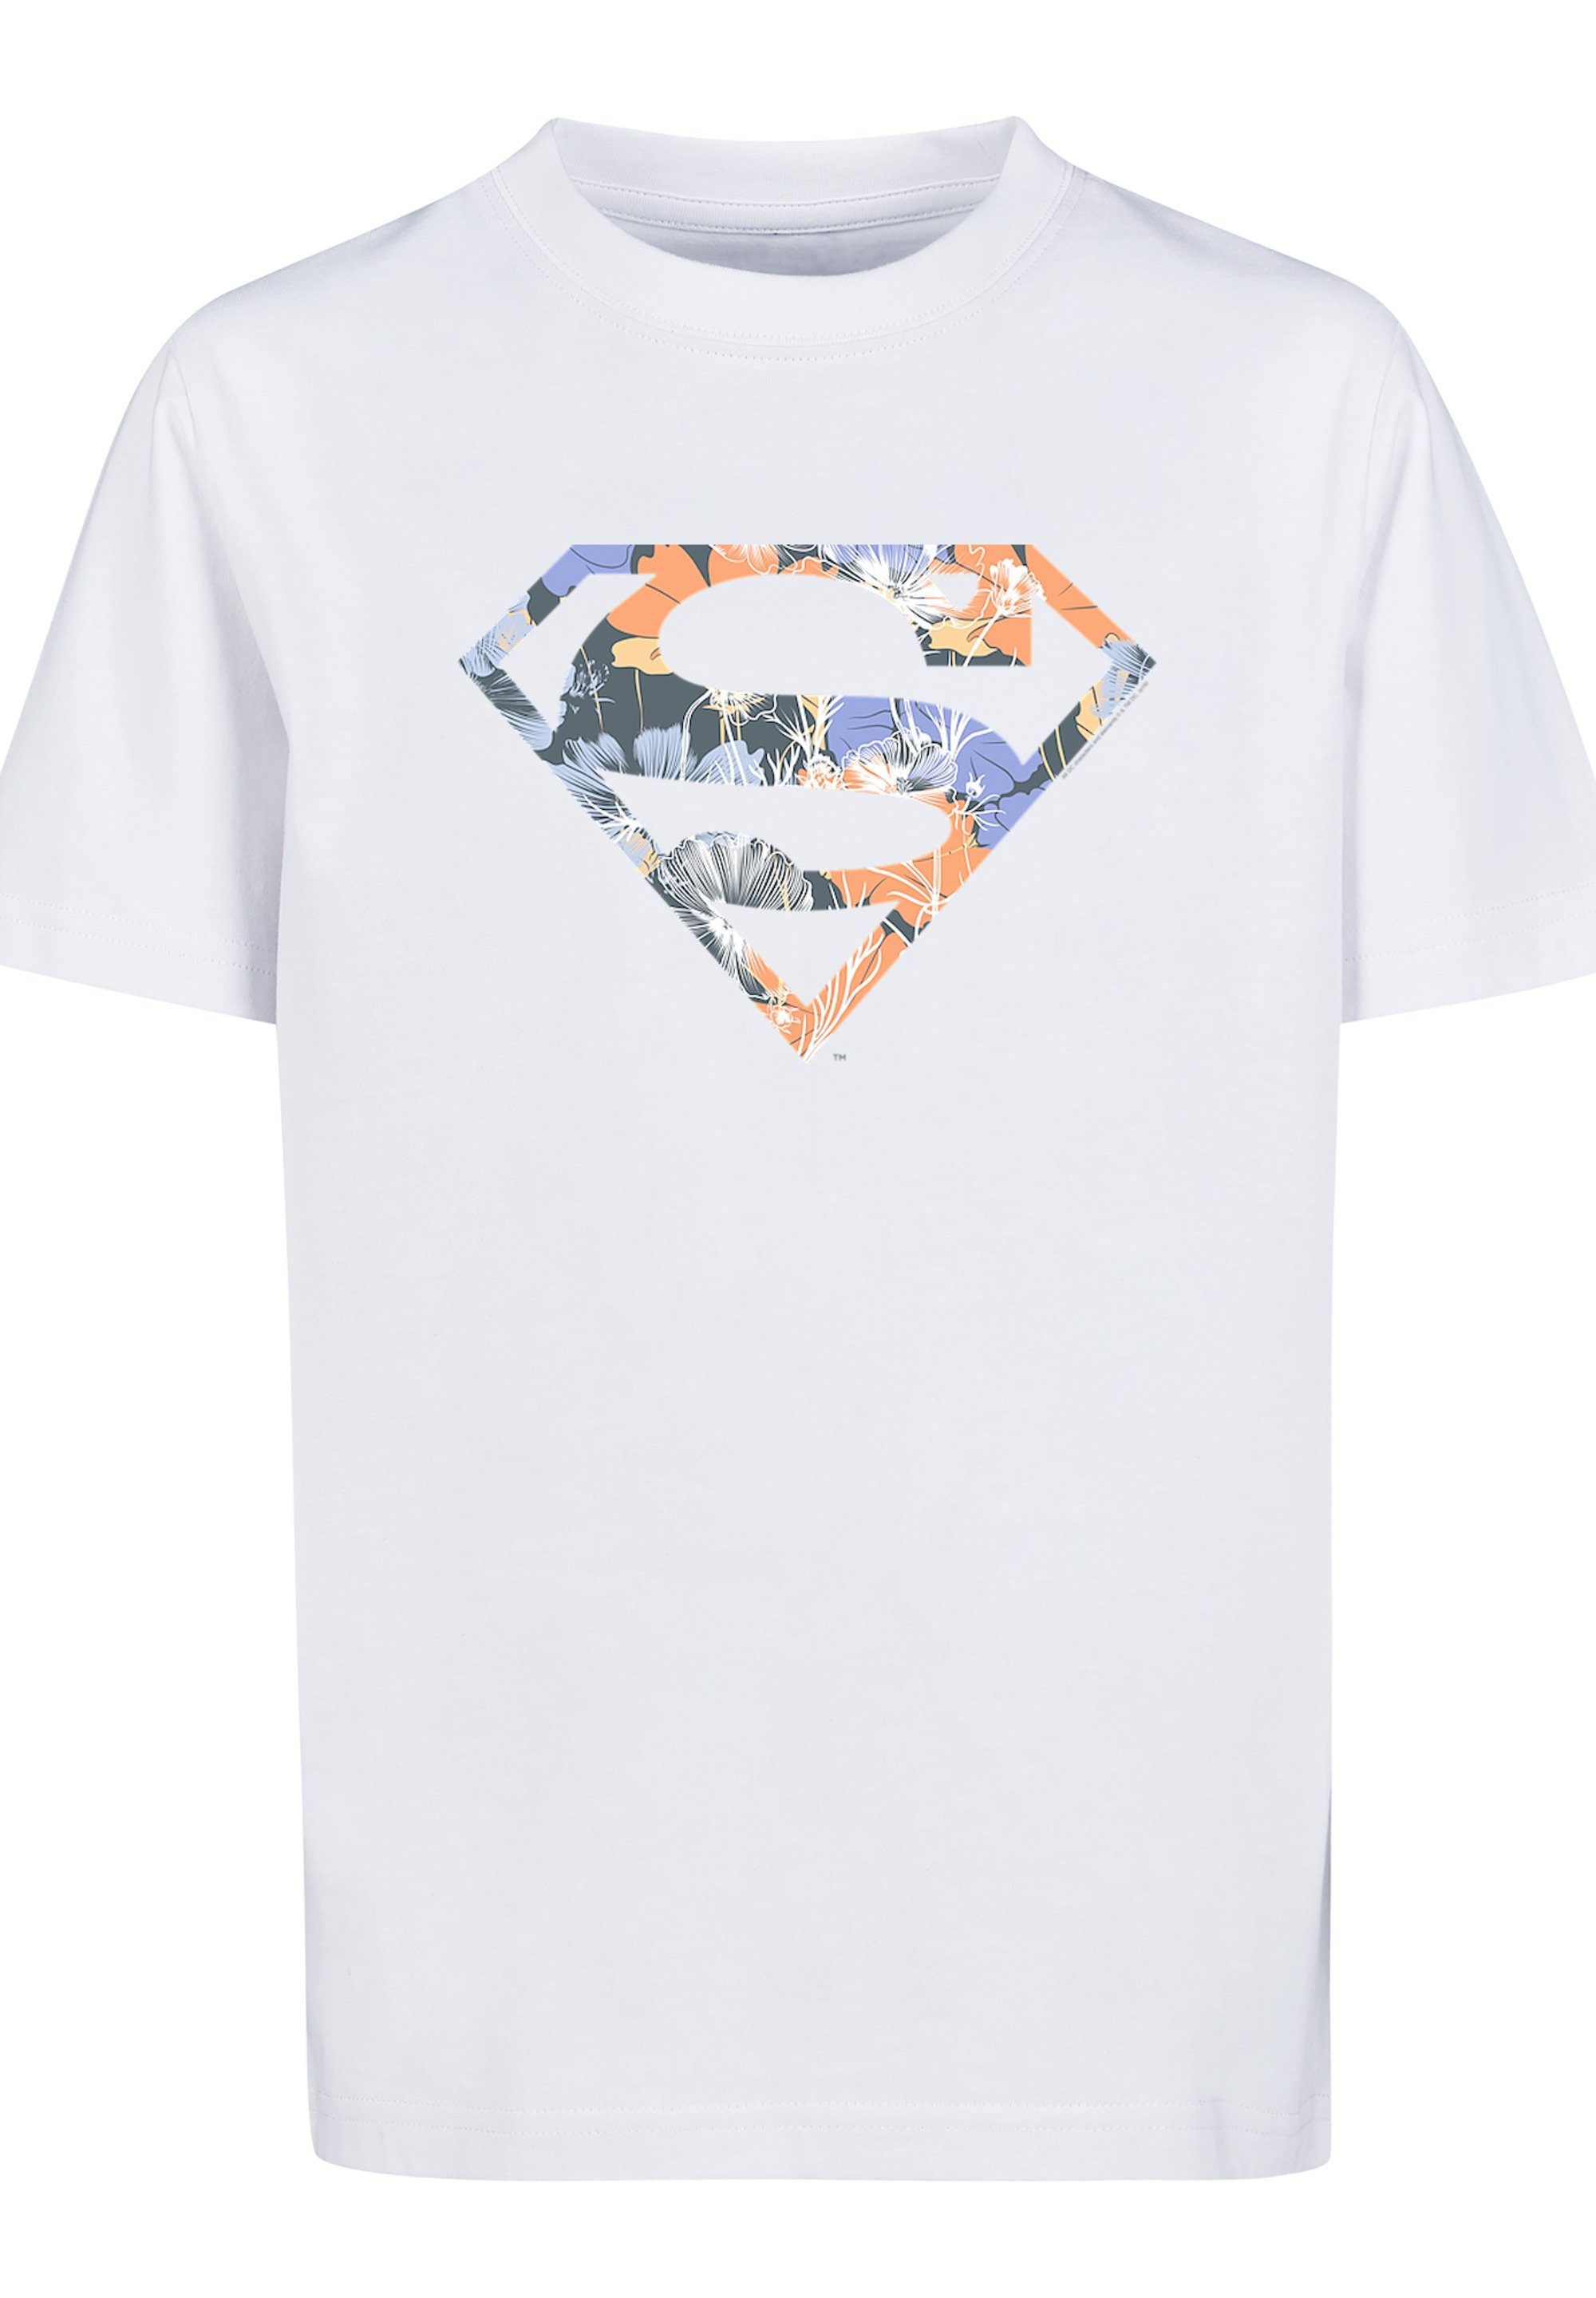 weiß Comics DC Unisex Logo T-Shirt Floral F4NT4STIC Superheld Merch,Jungen,Mädchen,Bedruckt T-Shirt Superman Kinder,Premium